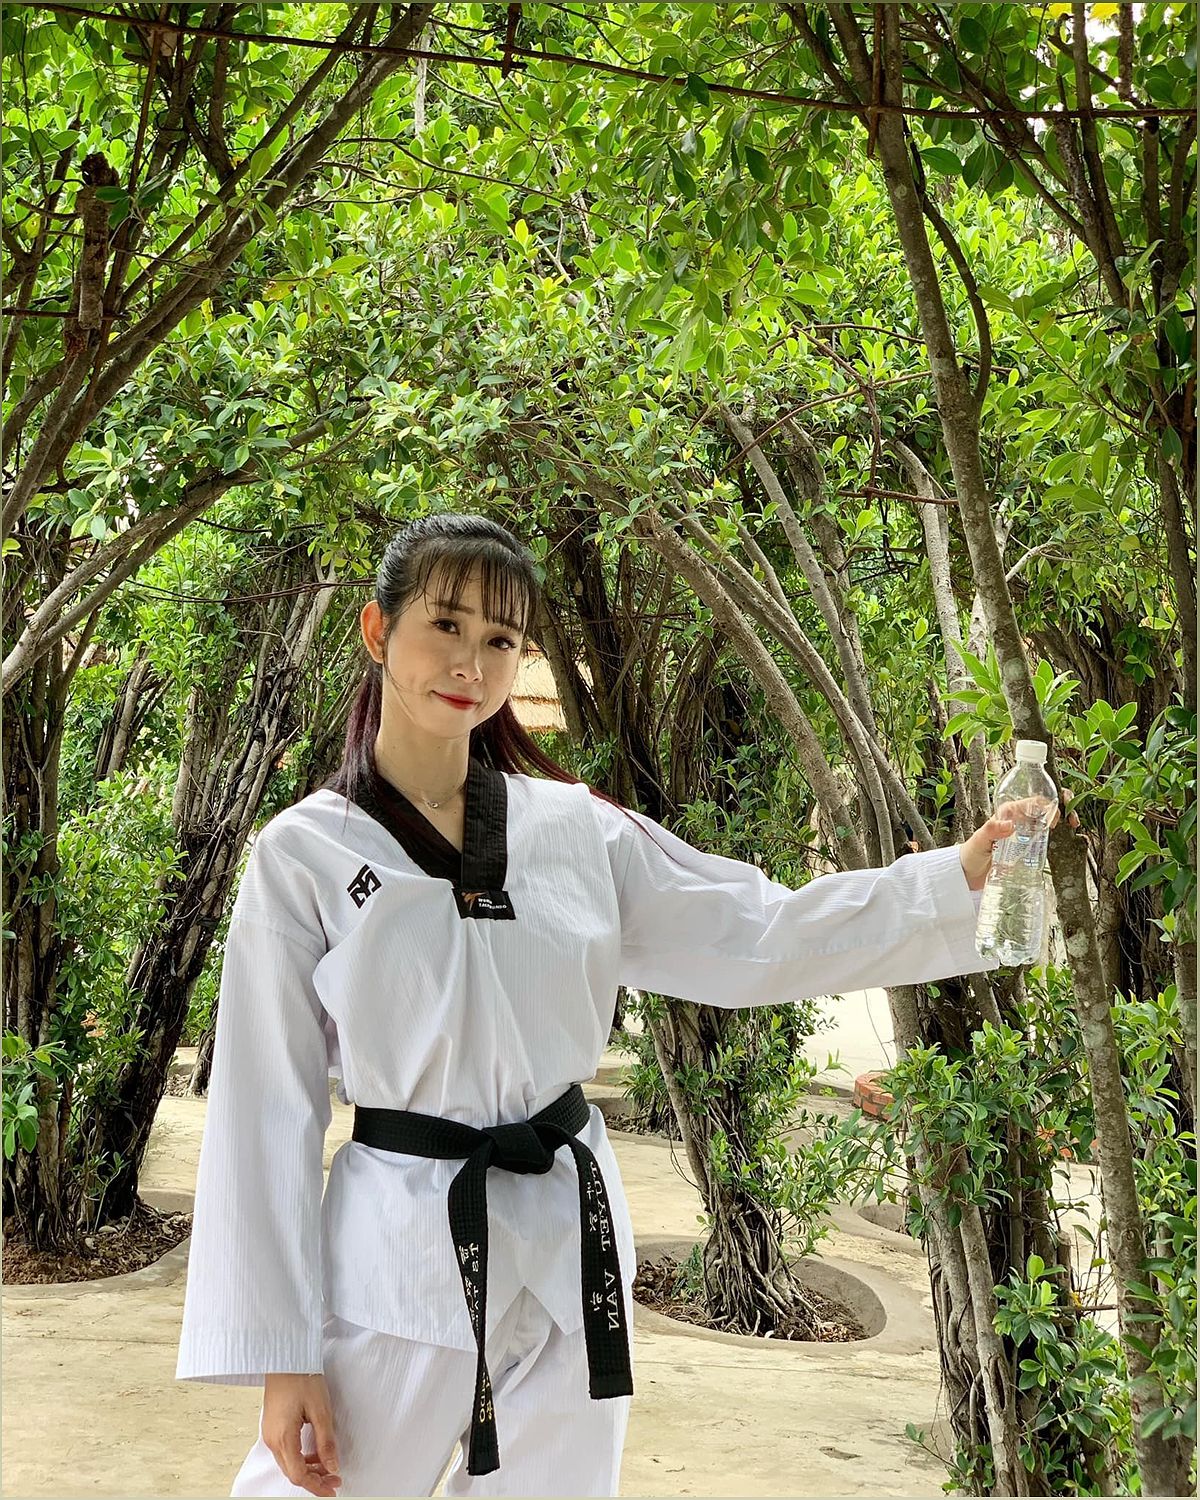 Châu Tuyết Vân - Võ sĩ Taekwondo nổi tiếng và gợi cảm - -459974542